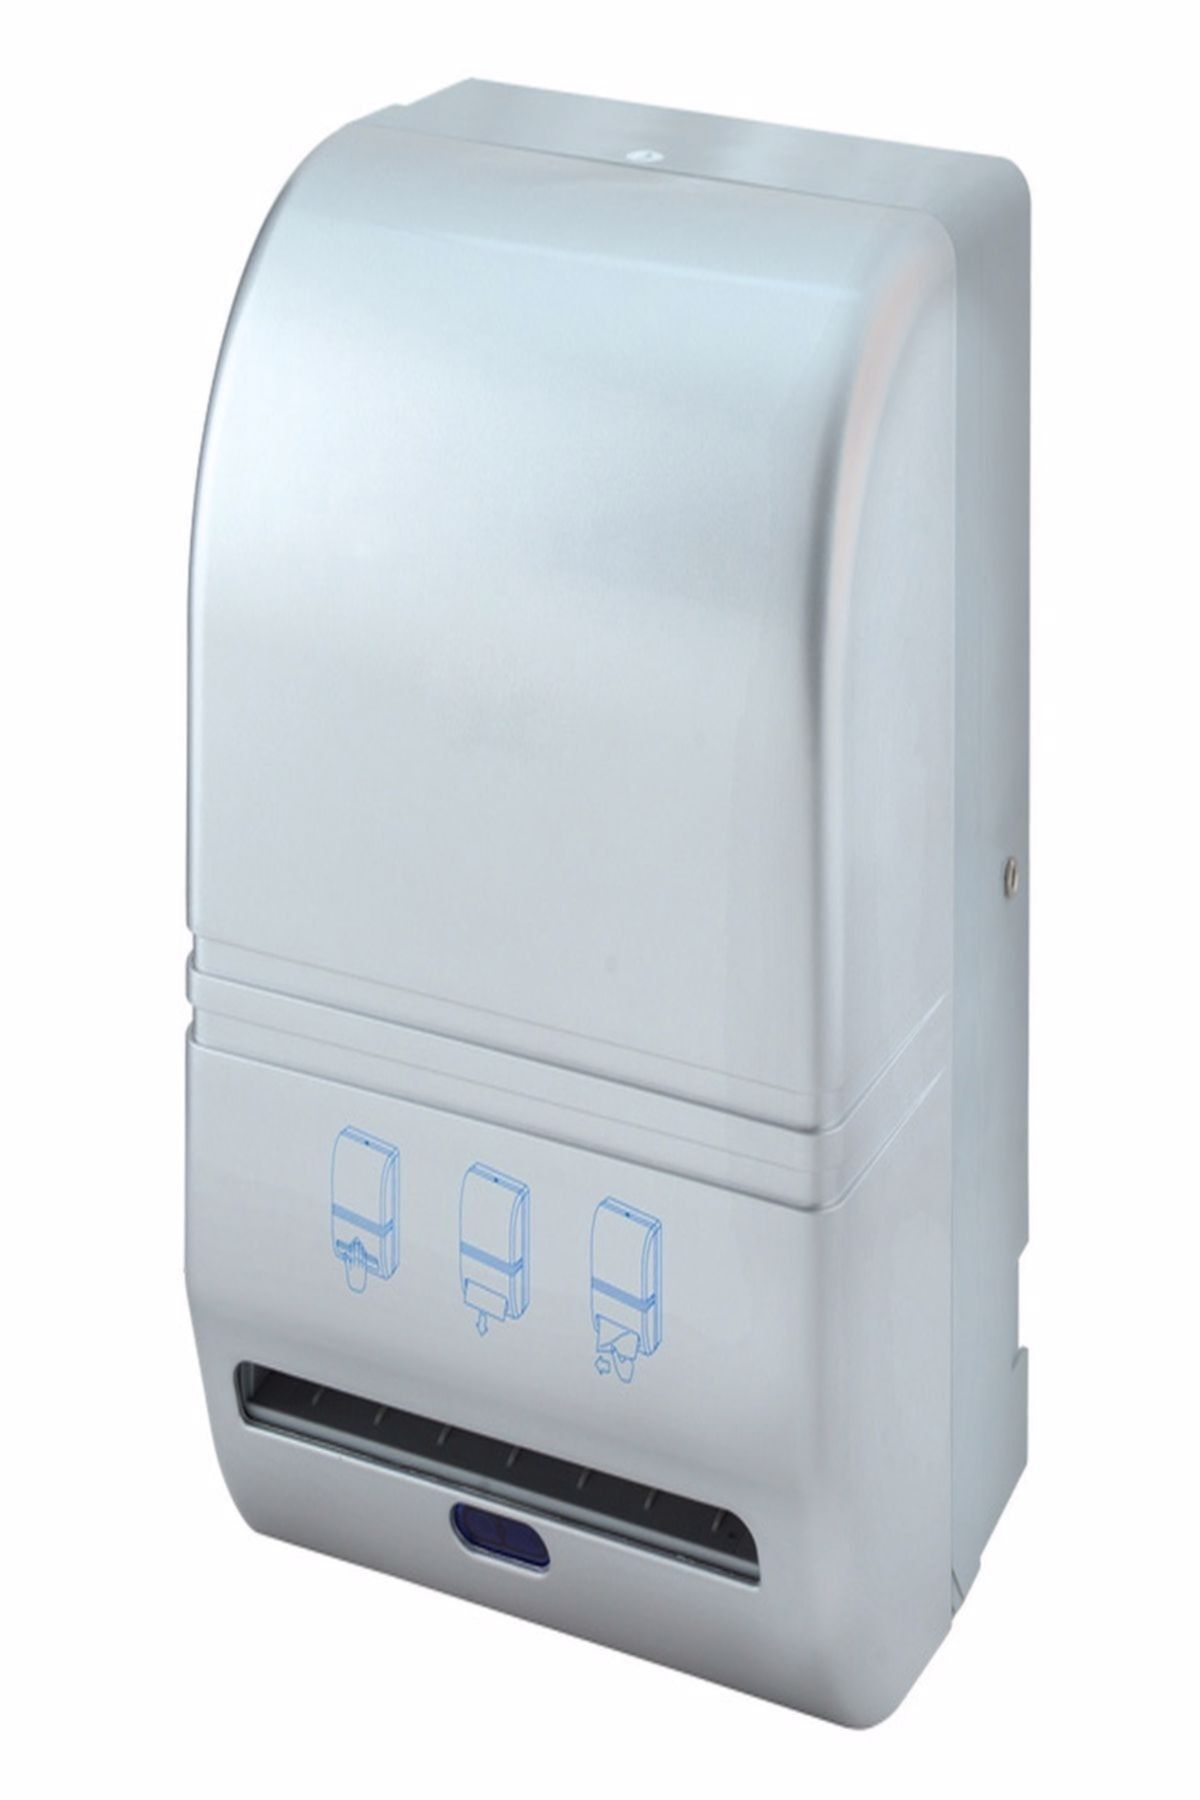 KG-GOLDPAPER Xinda Fotoselli Ve Sensörlü Gümüş Renk 21 Cm Hareketli Kağıt Havlusu Makinesi (ELEKTRİKLİ VE PİLLİ)